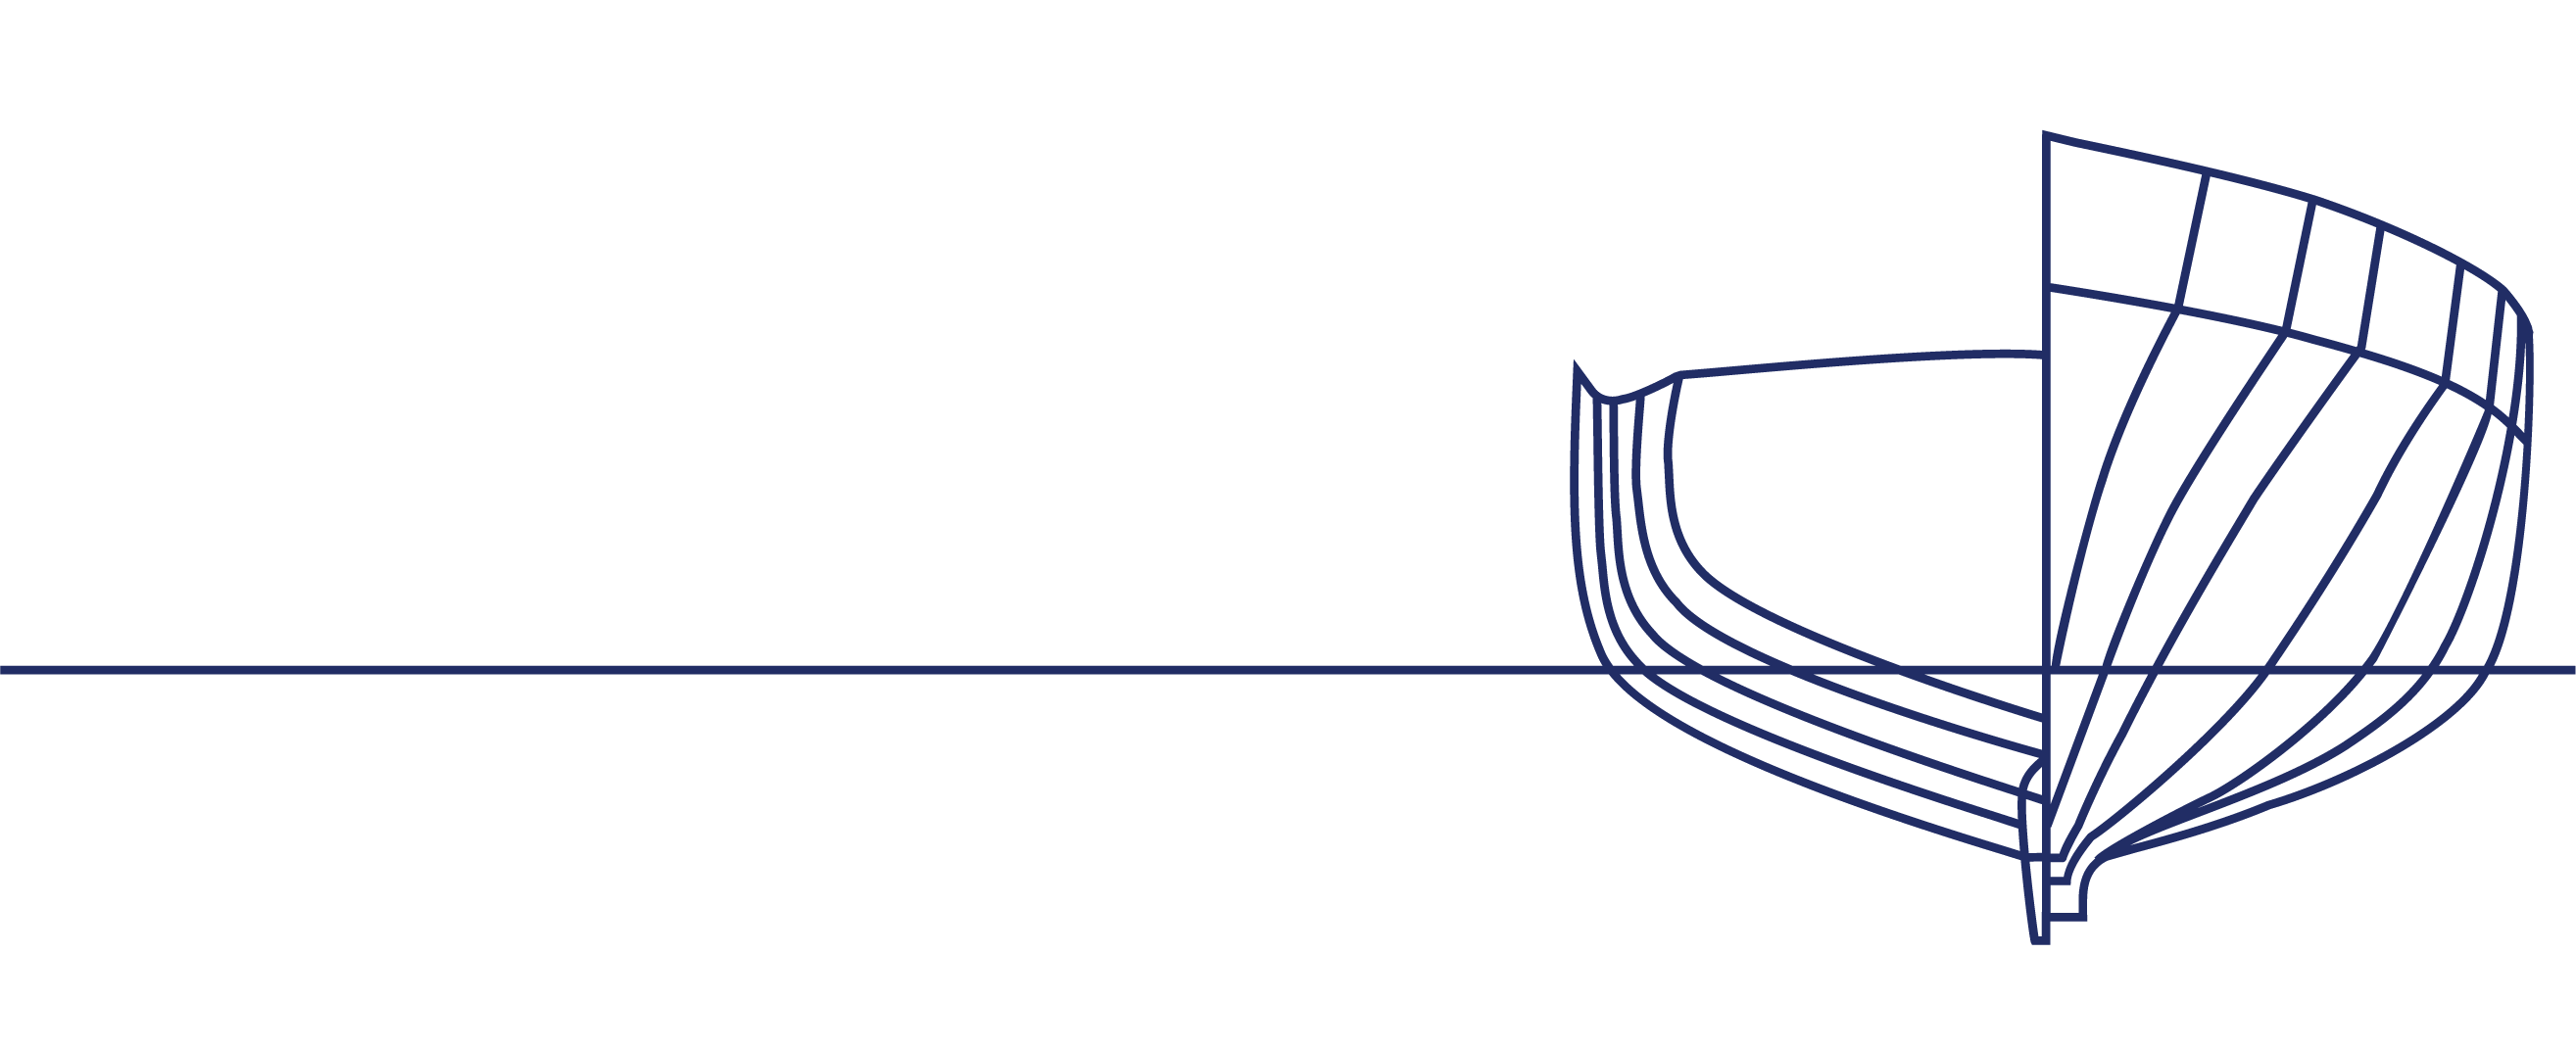 Krogen logo